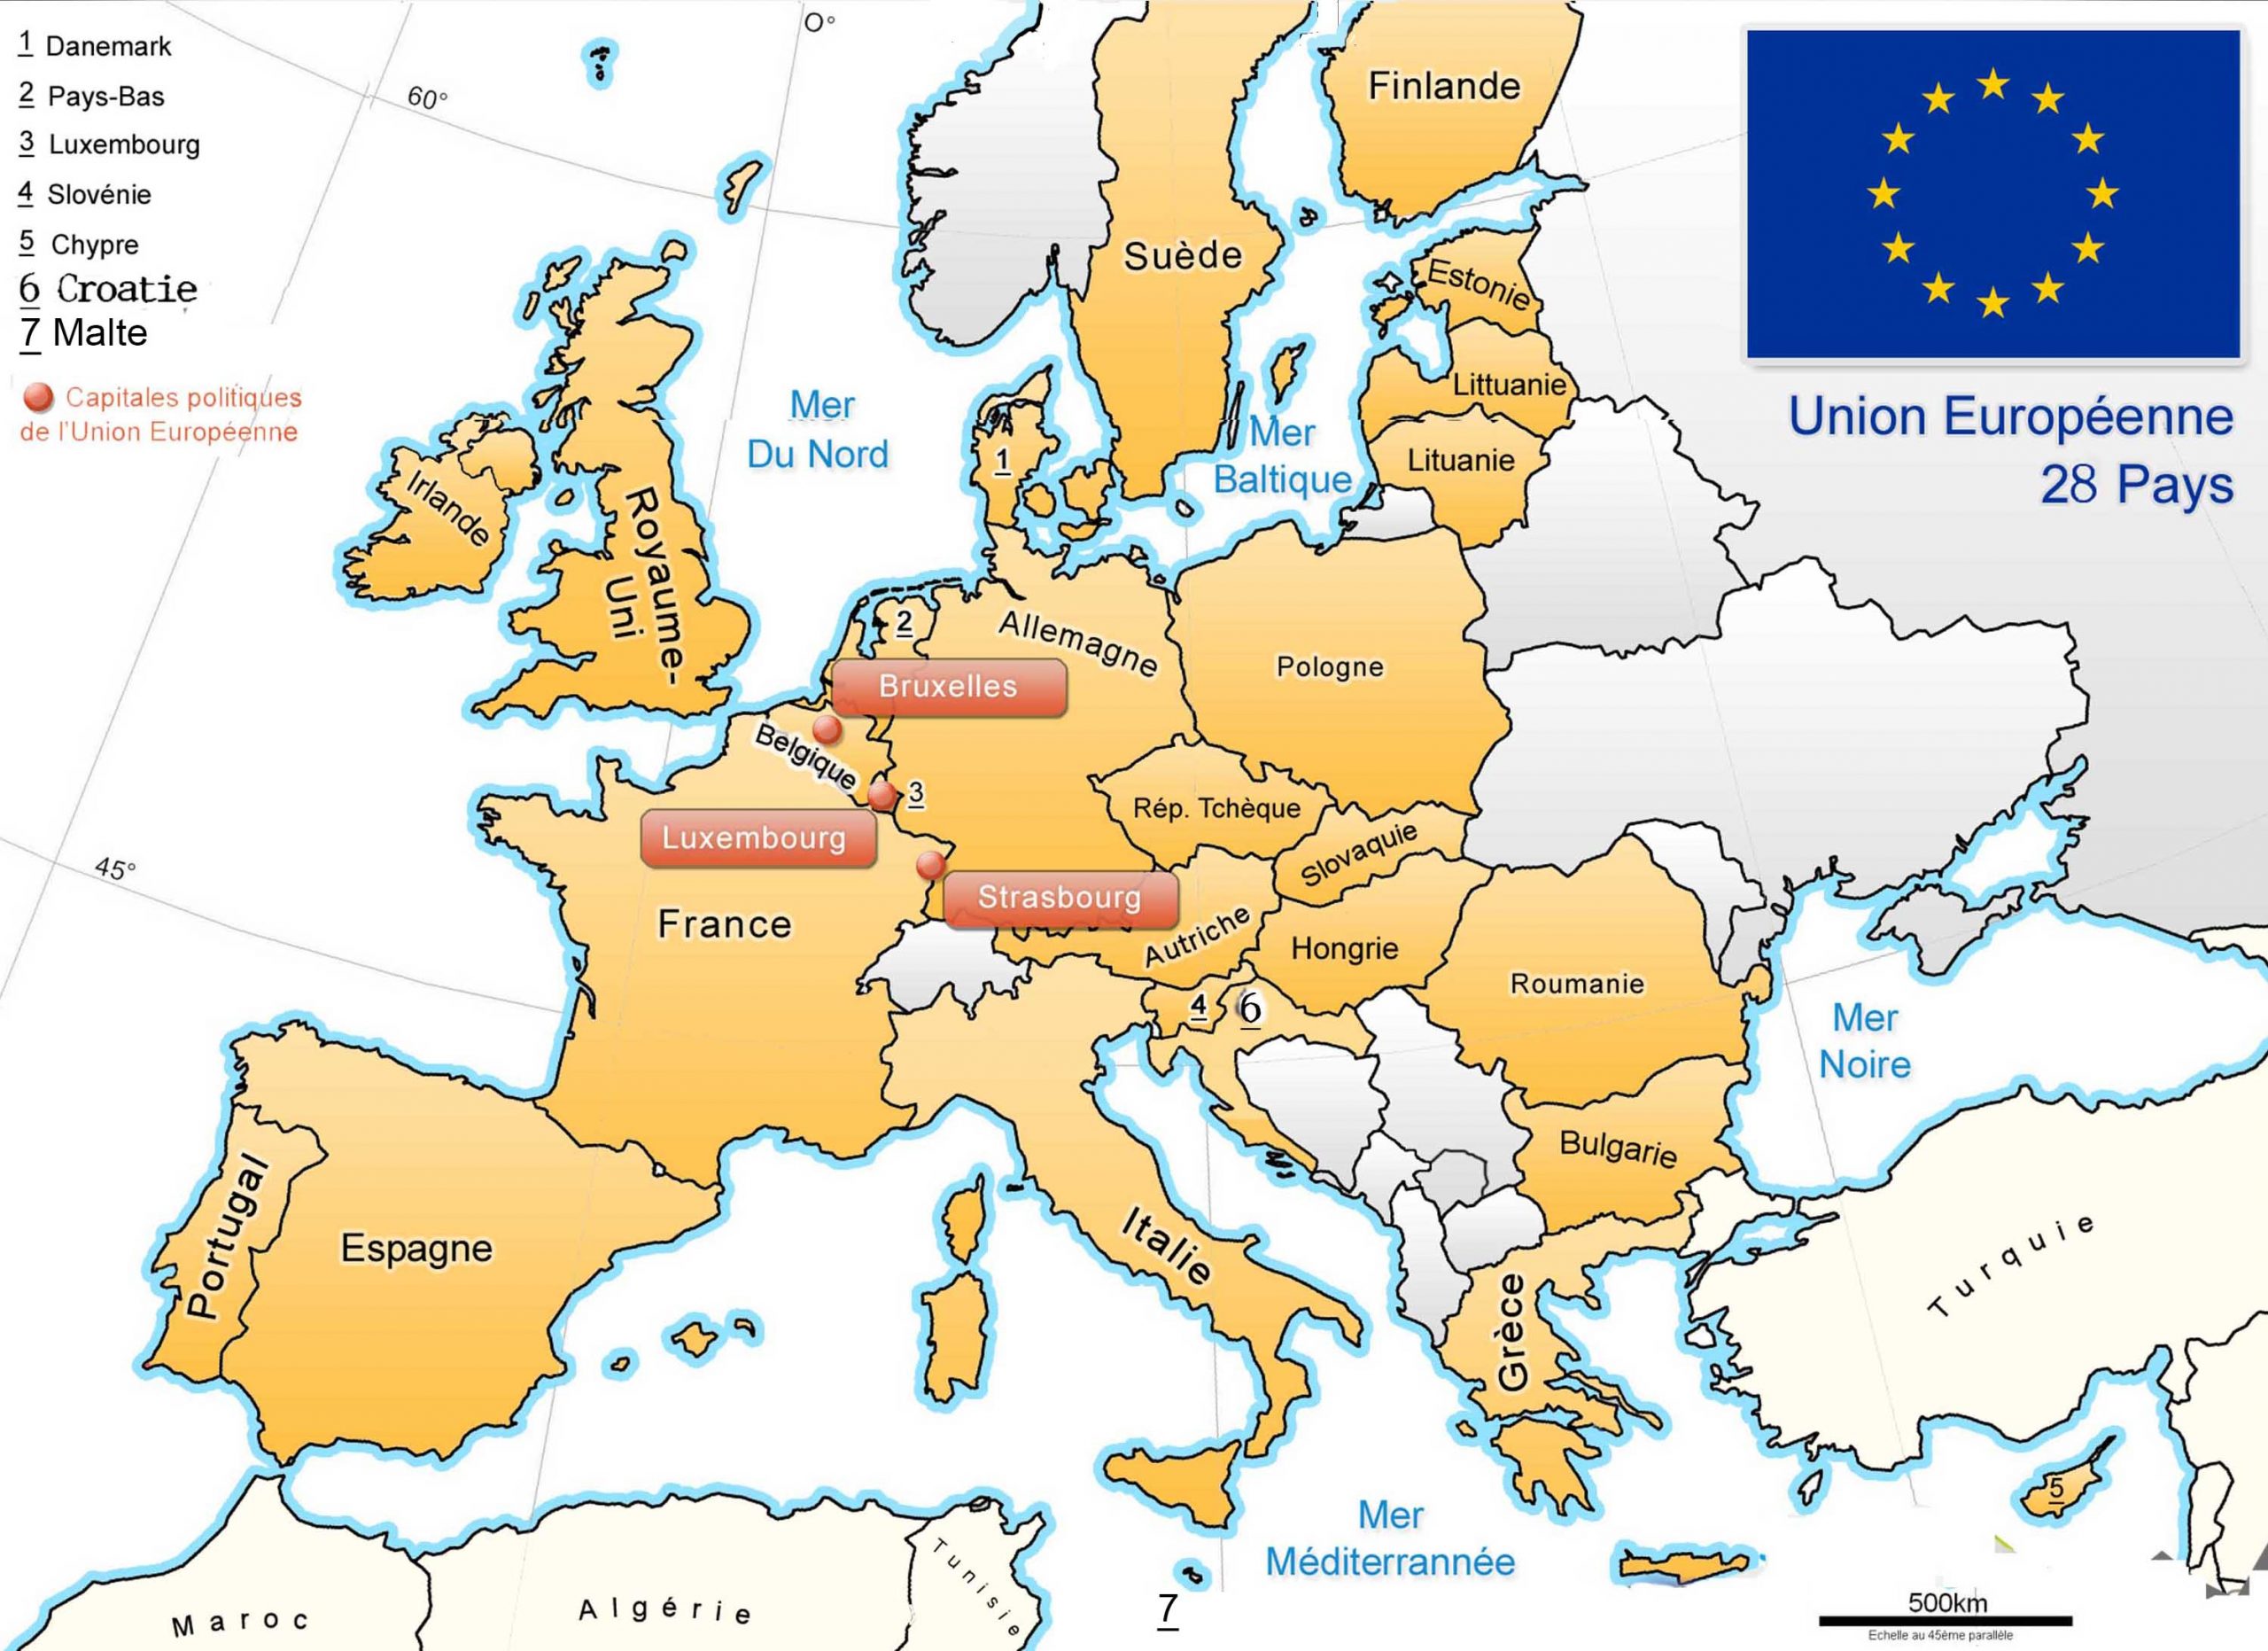 Apprendre À Placer Les Pays De L&amp;#039; Union Européenne - Le Blog encequiconcerne Jeux Union Européenne 